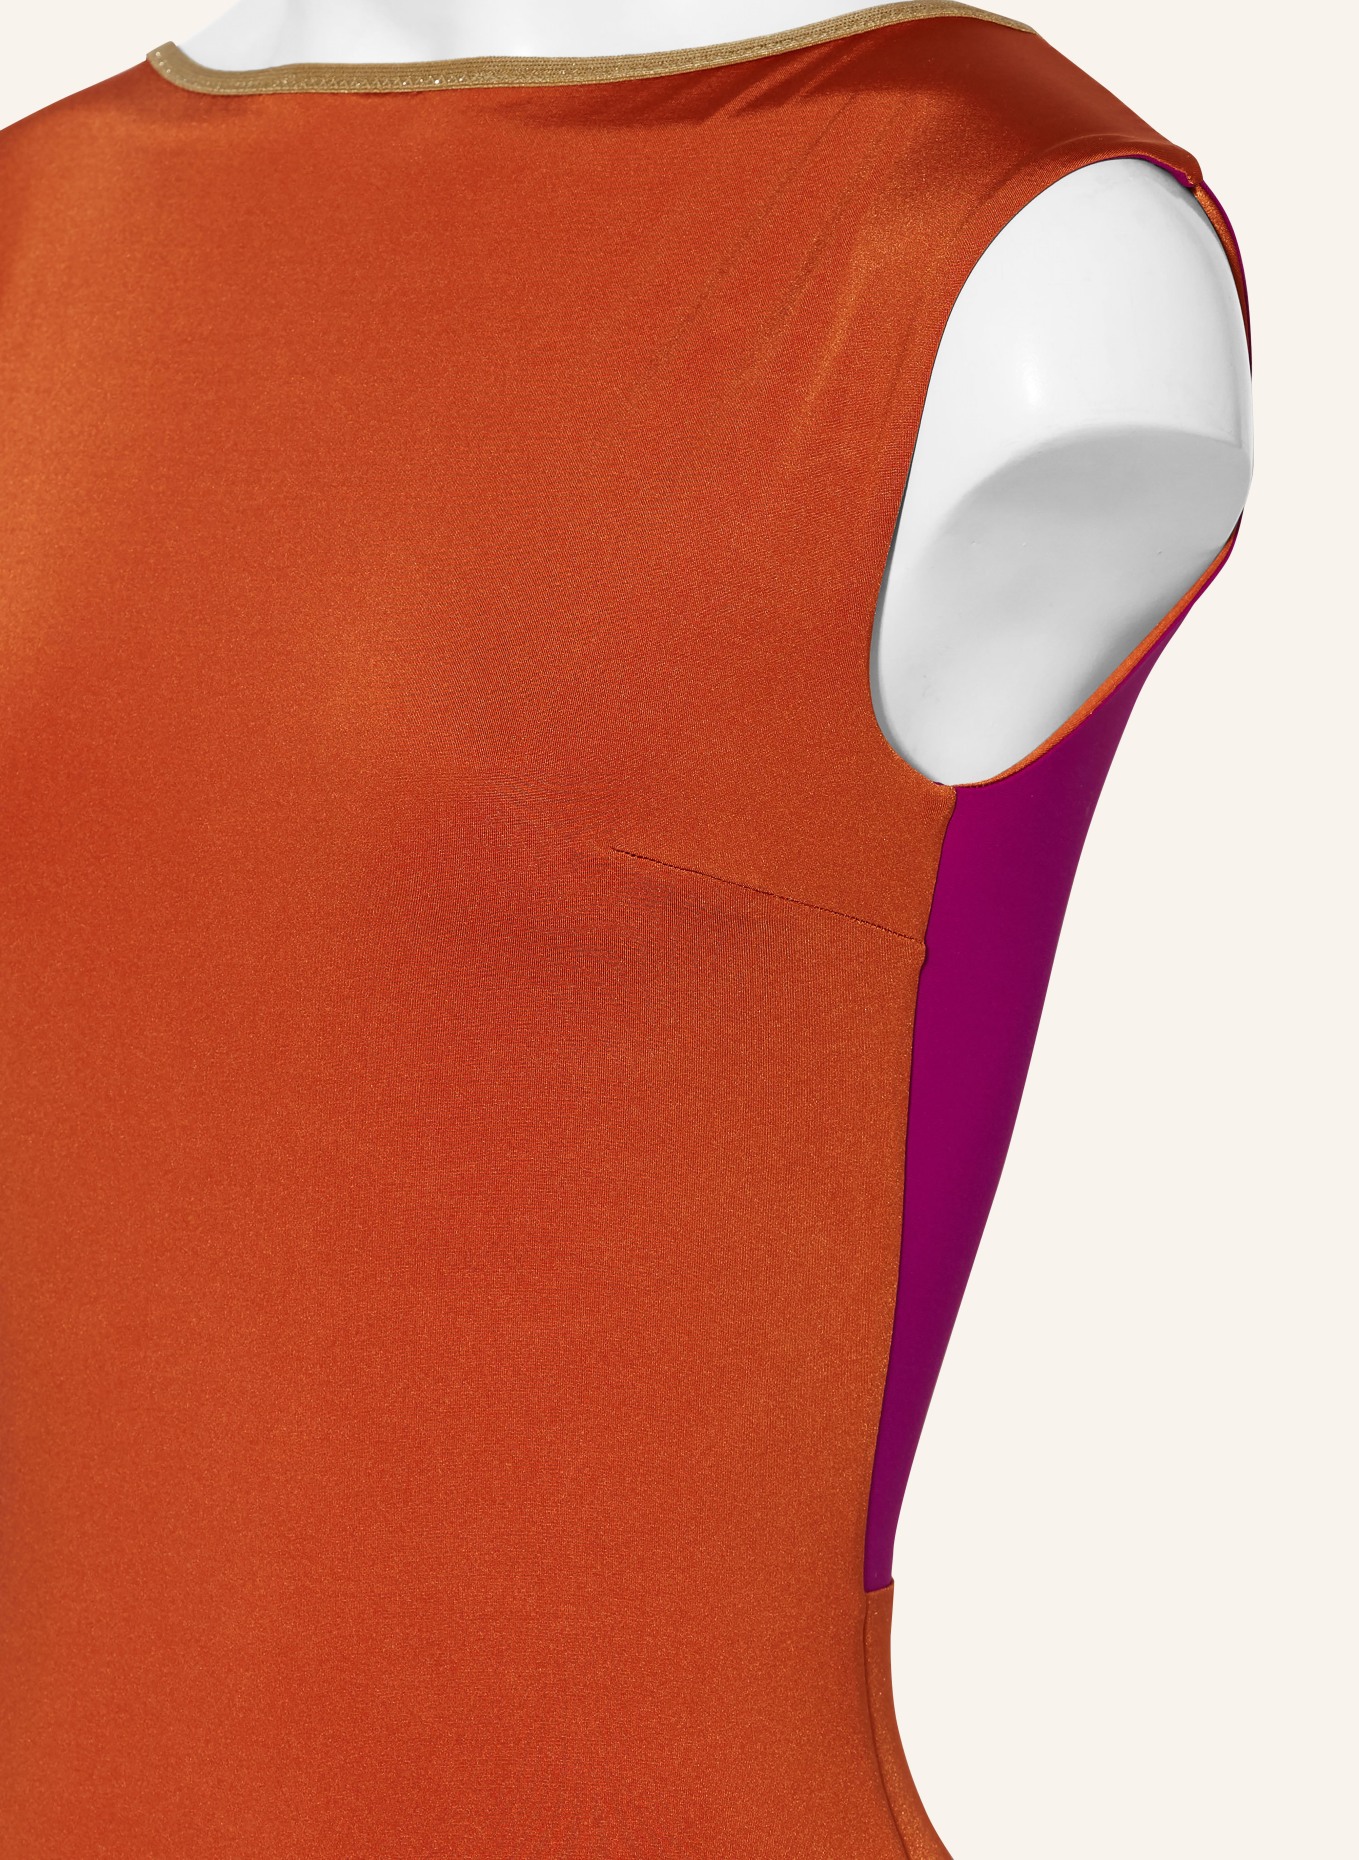 MYMARINI Swimsuit SEABODY SHINE reversible , Color: FUCHSIA/ DARK ORANGE (Image 6)